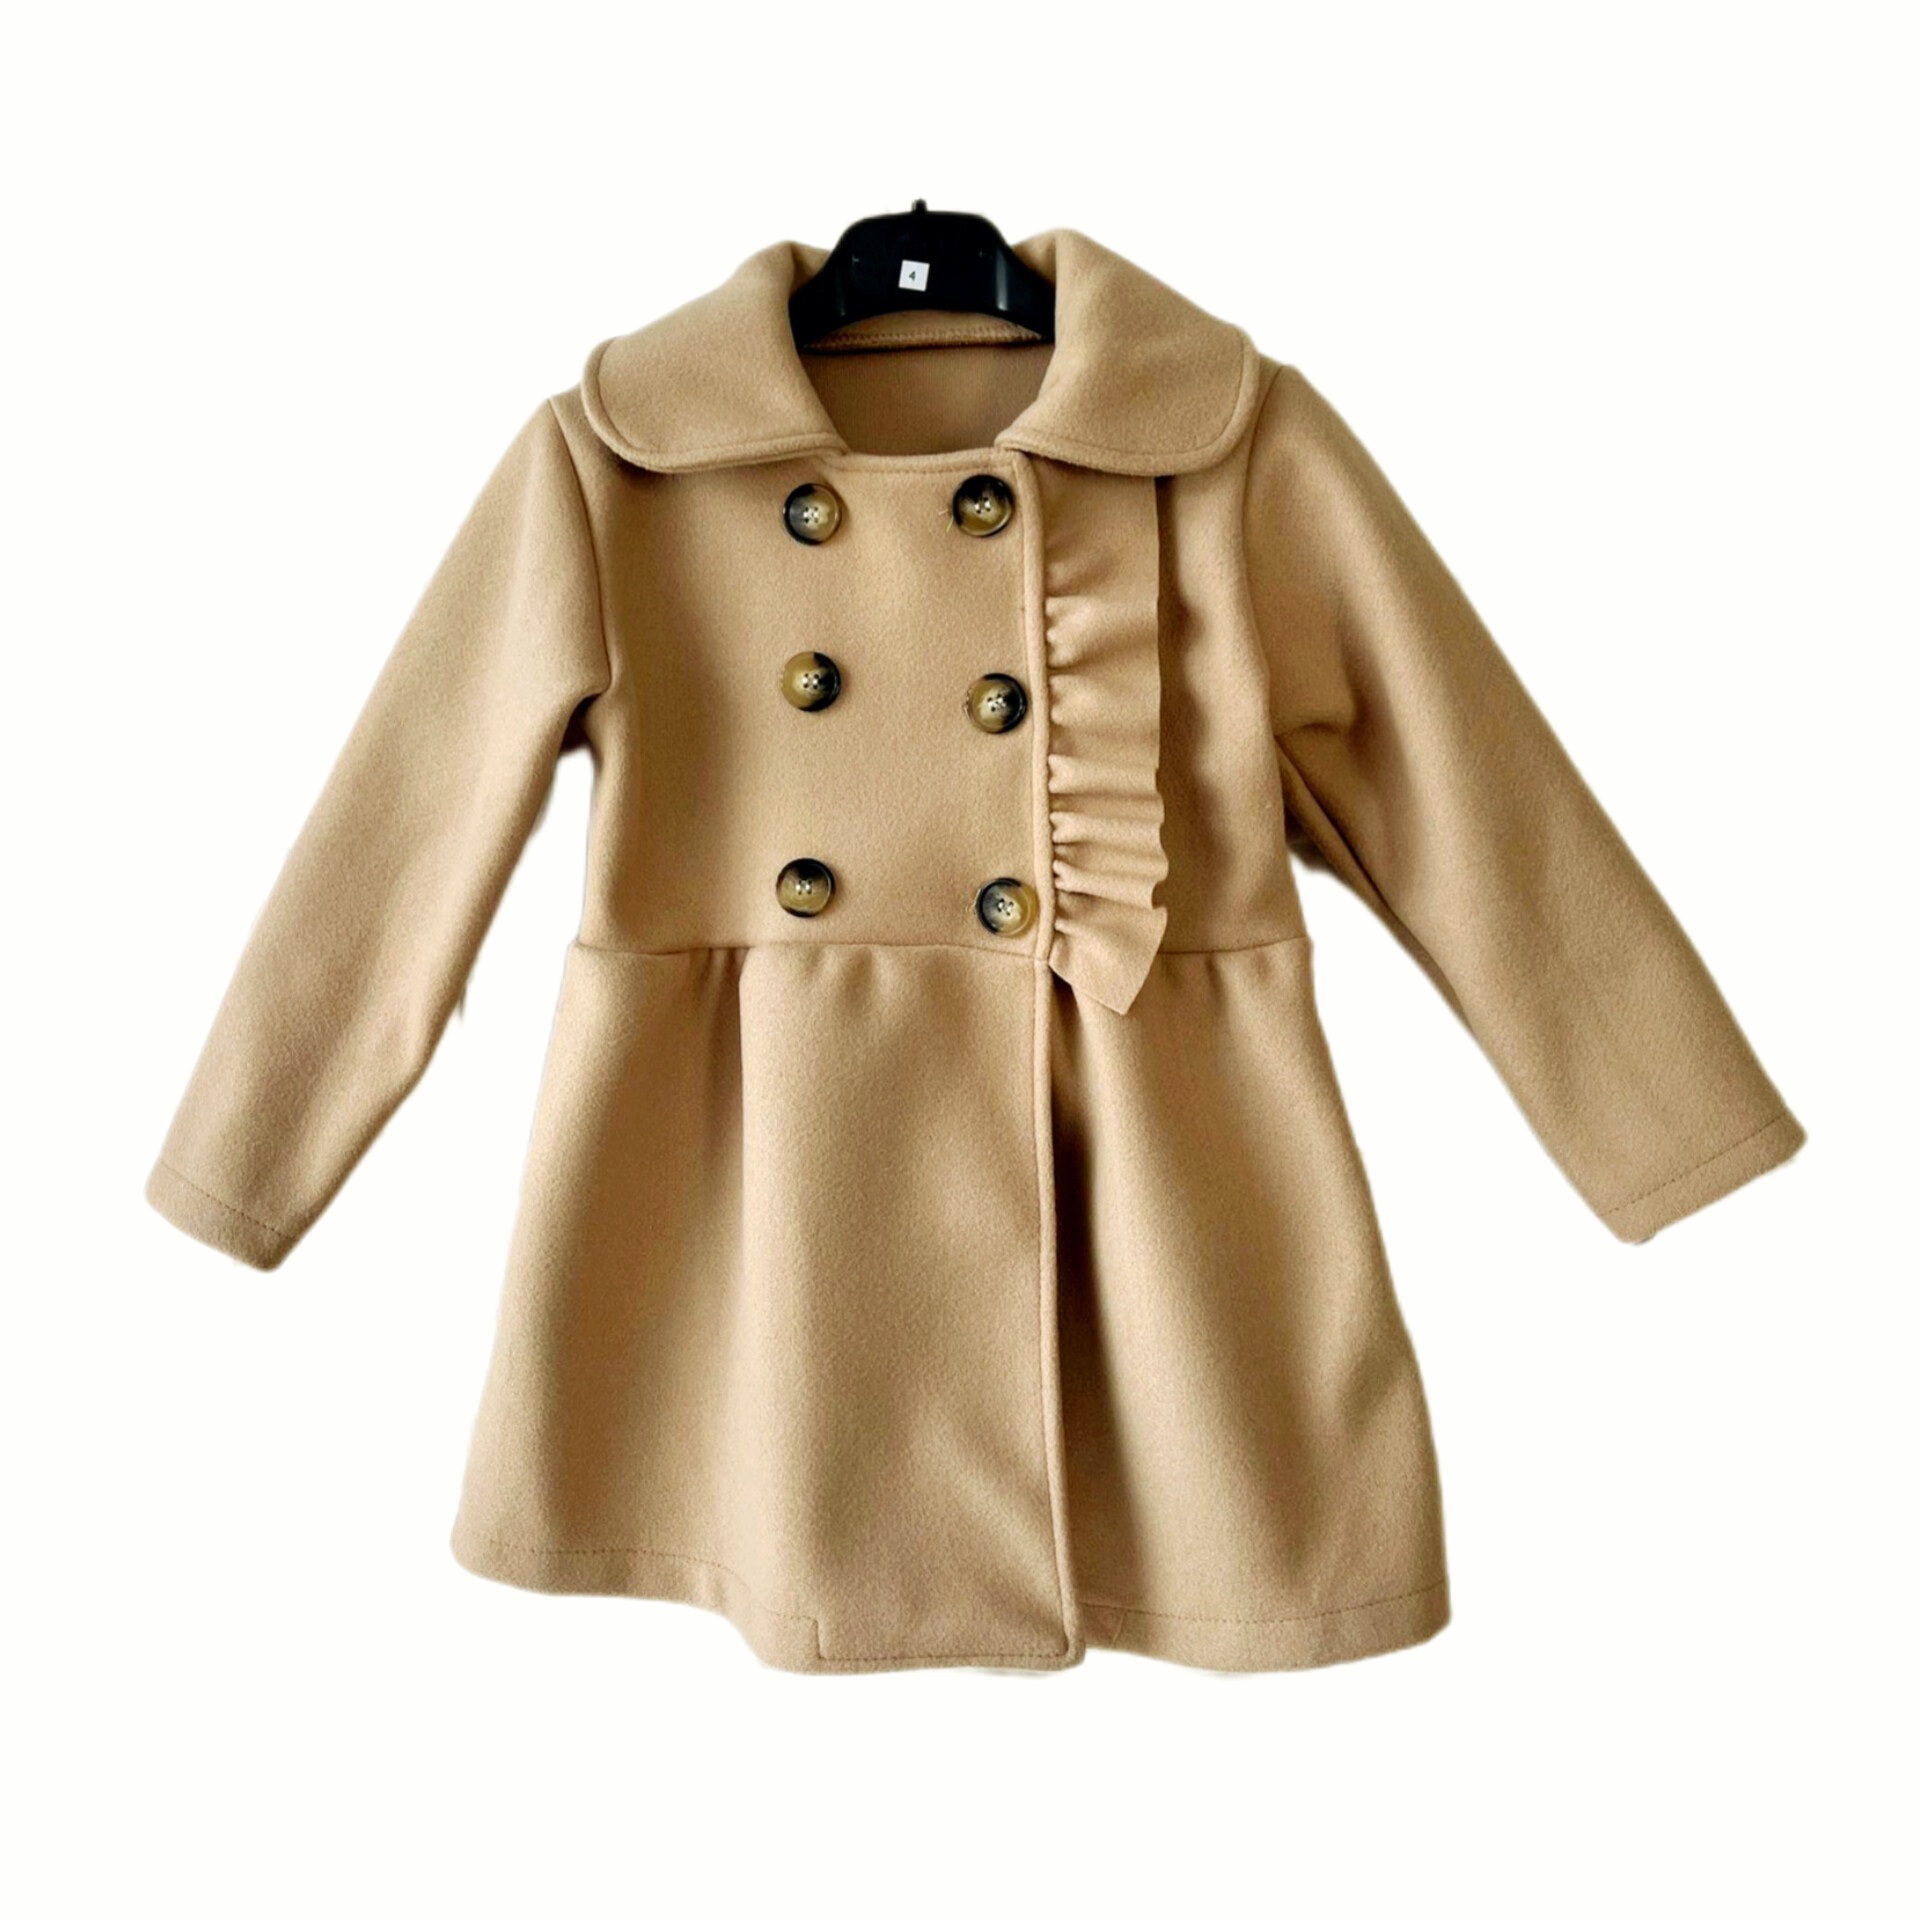 Elegantný kabát pre dievčatko 6 rokov farba béžová